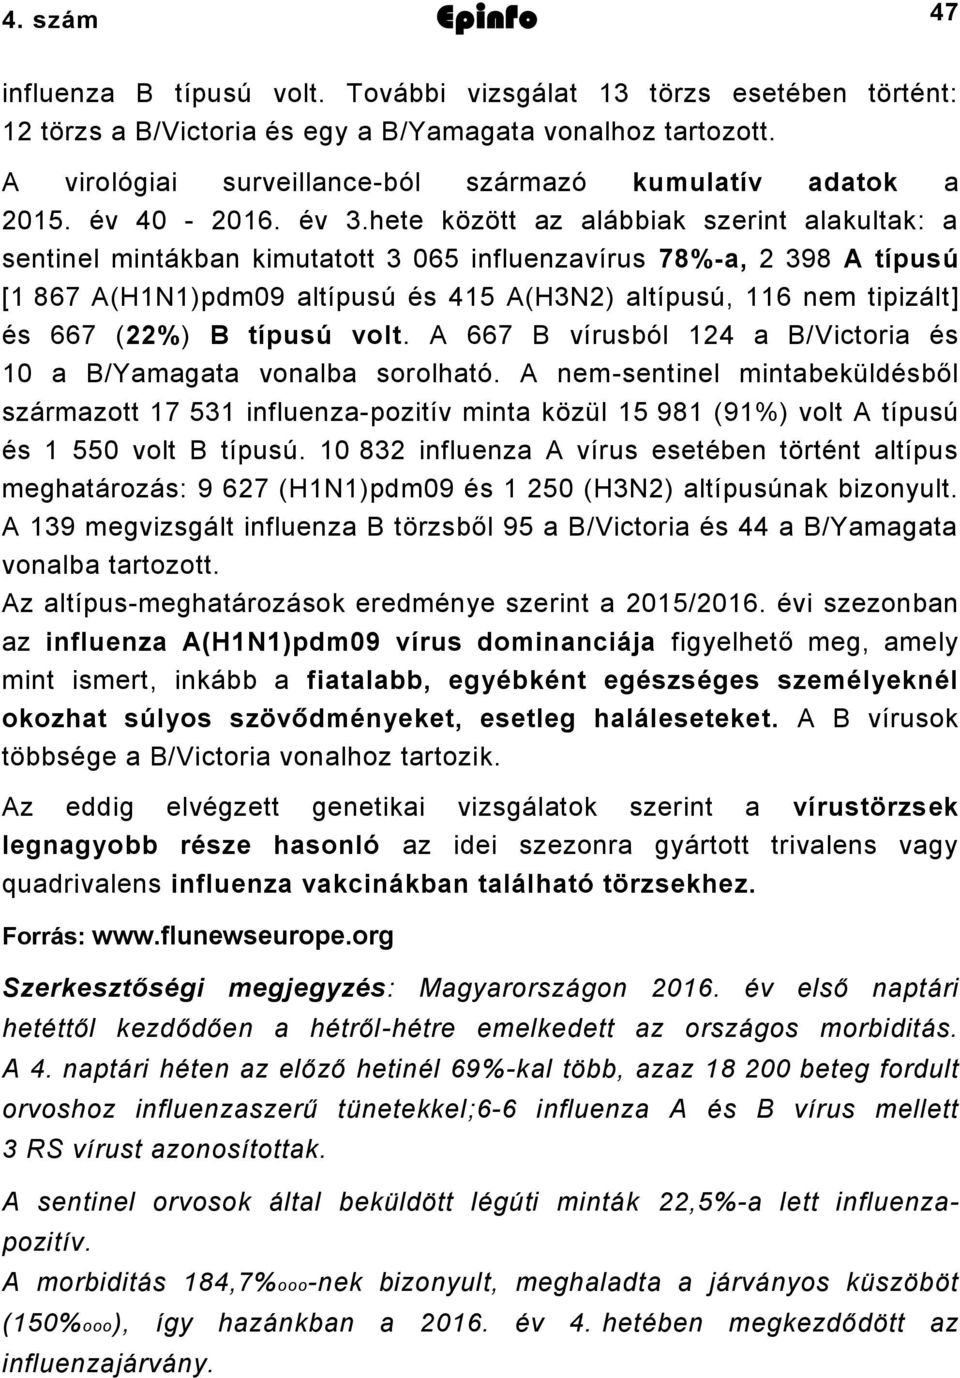 hete között az alábbiak szerint alakultak: a sentinel mintákban kimutatott 3 065 influenzavírus 78%-a, 2 398 A típusú [1 867 A(H1N1)pdm09 altípusú és 415 A(H3N2) altípusú, 116 nem tipizált] és 667